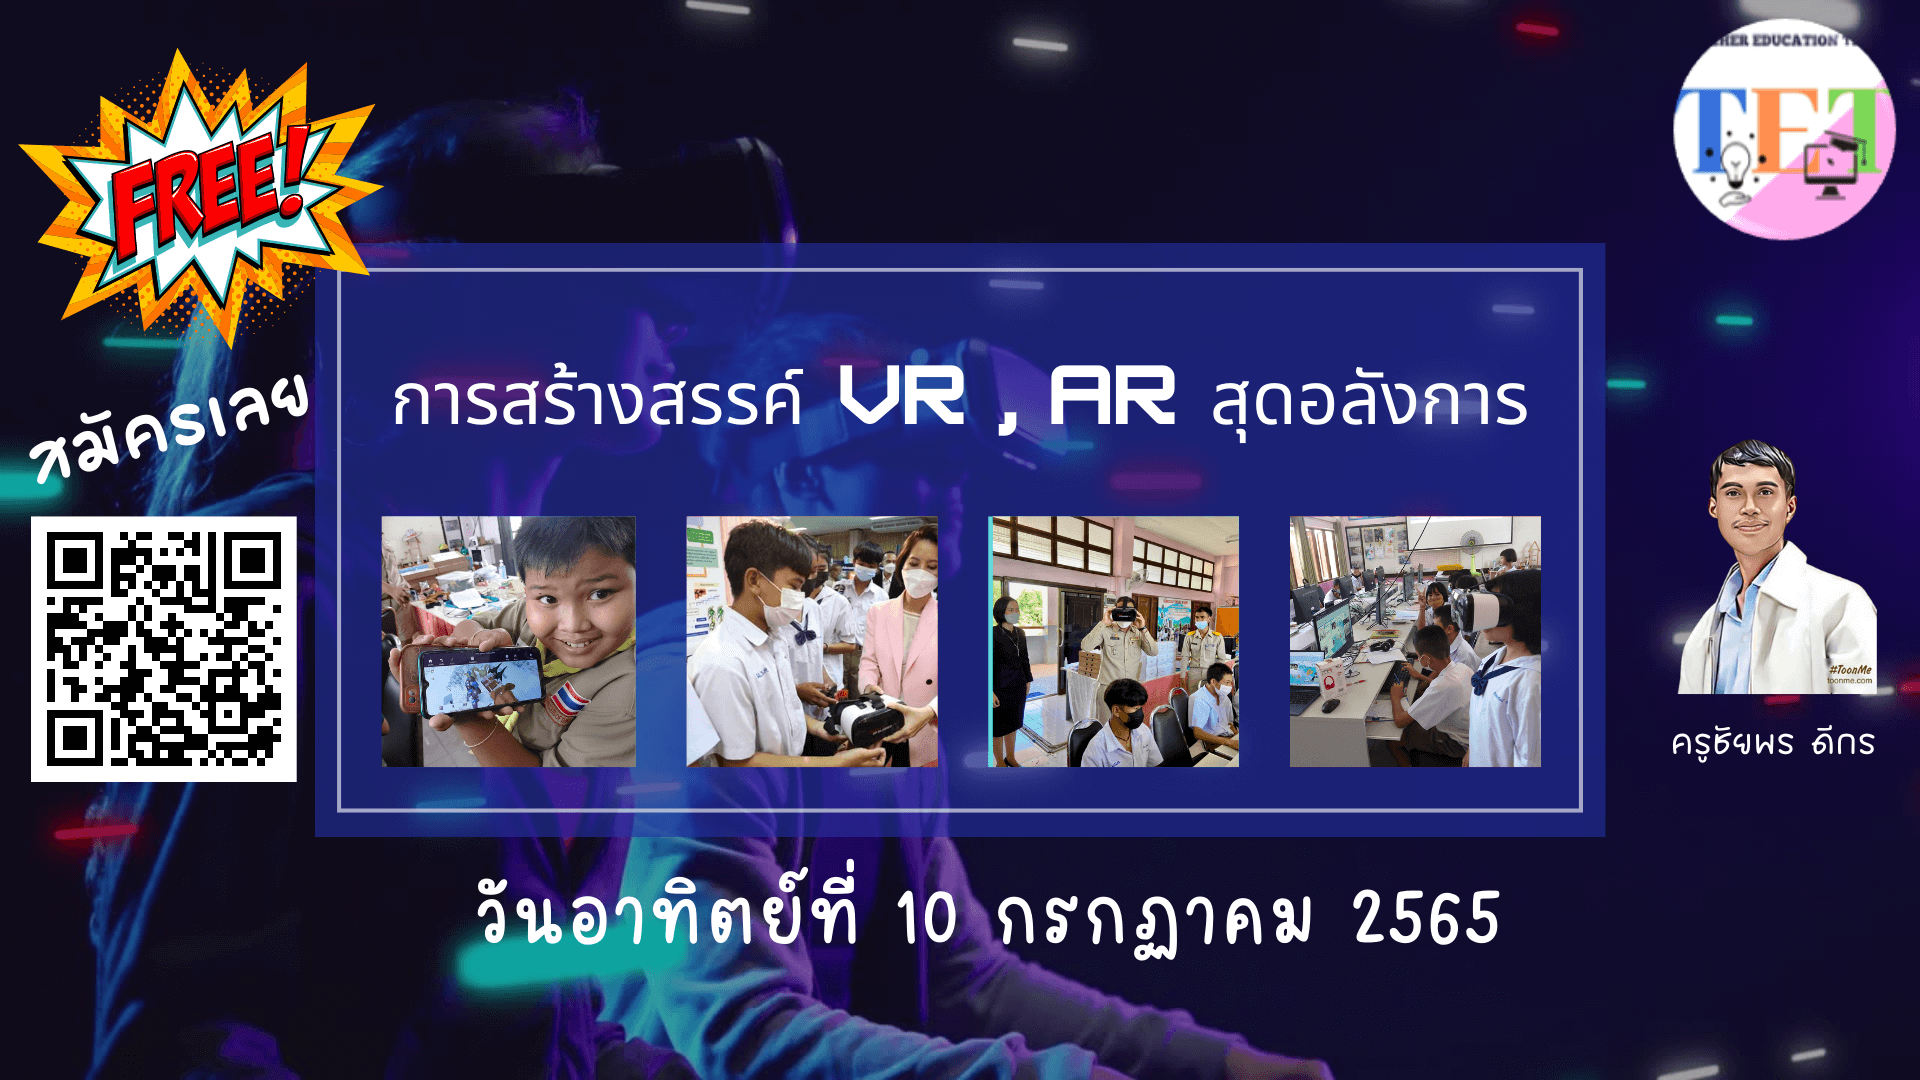 อบรมออนไลน์ การสร้างสรรค์ VR AR สุดอลังการในวันที่ 10 กรกฏาคม 2565 แอดมินเพจ ครูนก พาคลิก สื่อ การสอนออนไลน์ ง่ายสุดๆ